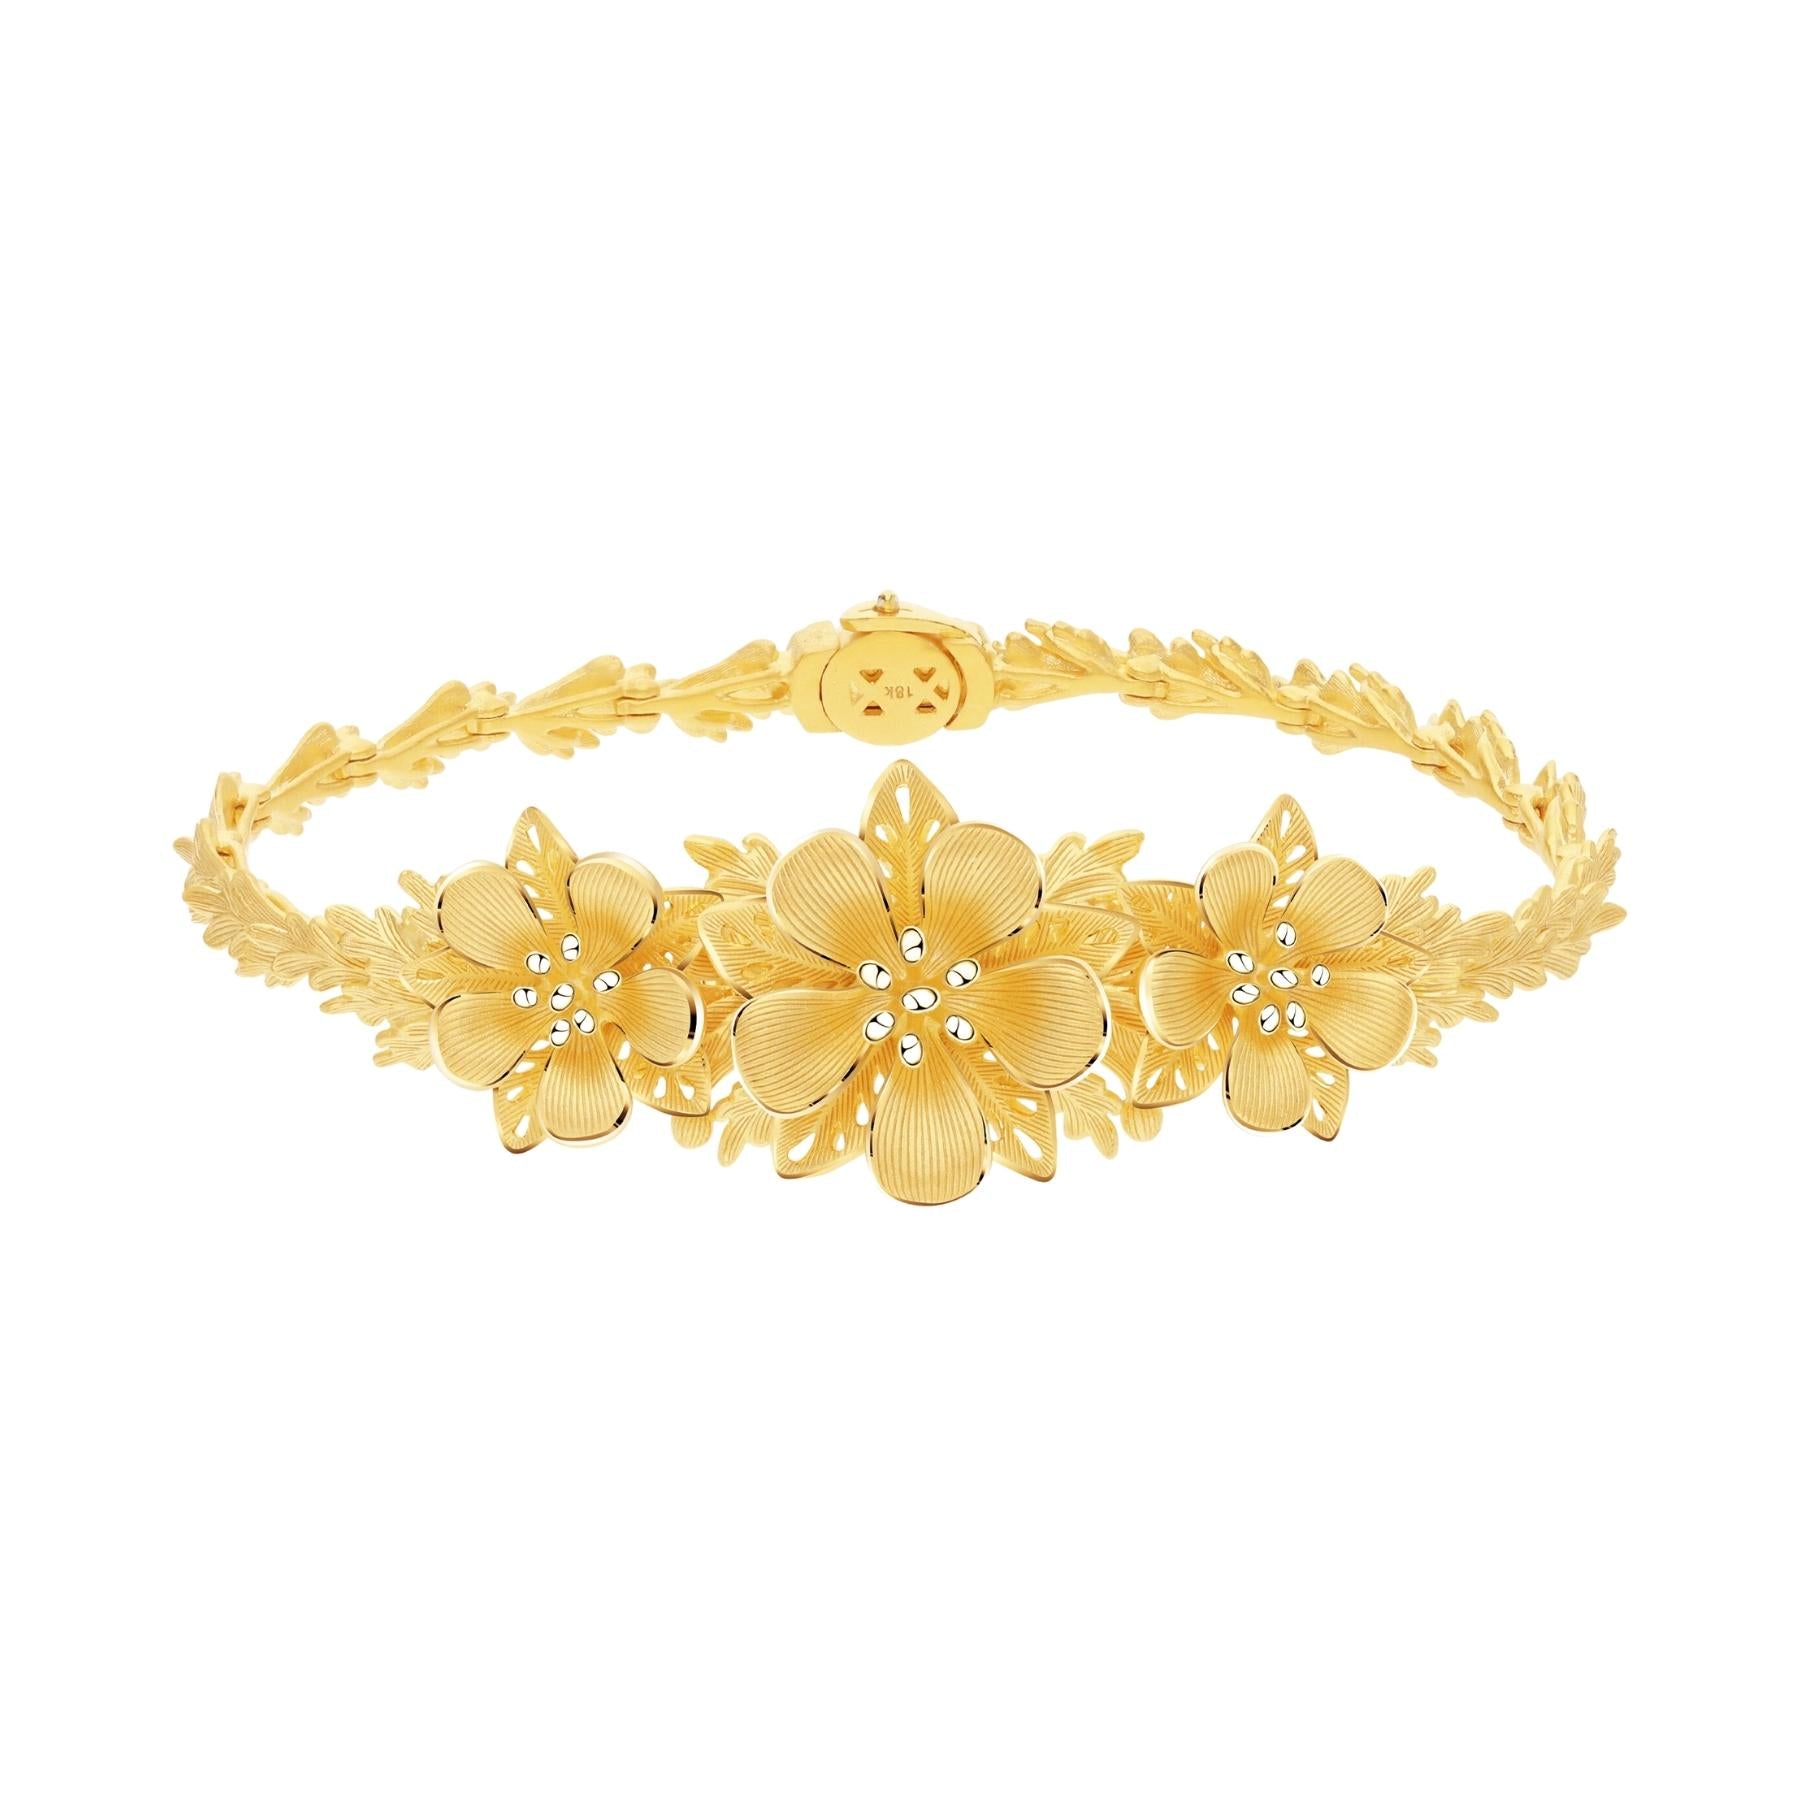 Cheap Gold Plated 24k Bracelet Ruby Bracelet For Women Wedding Christmas  Birthday Gift | Joom